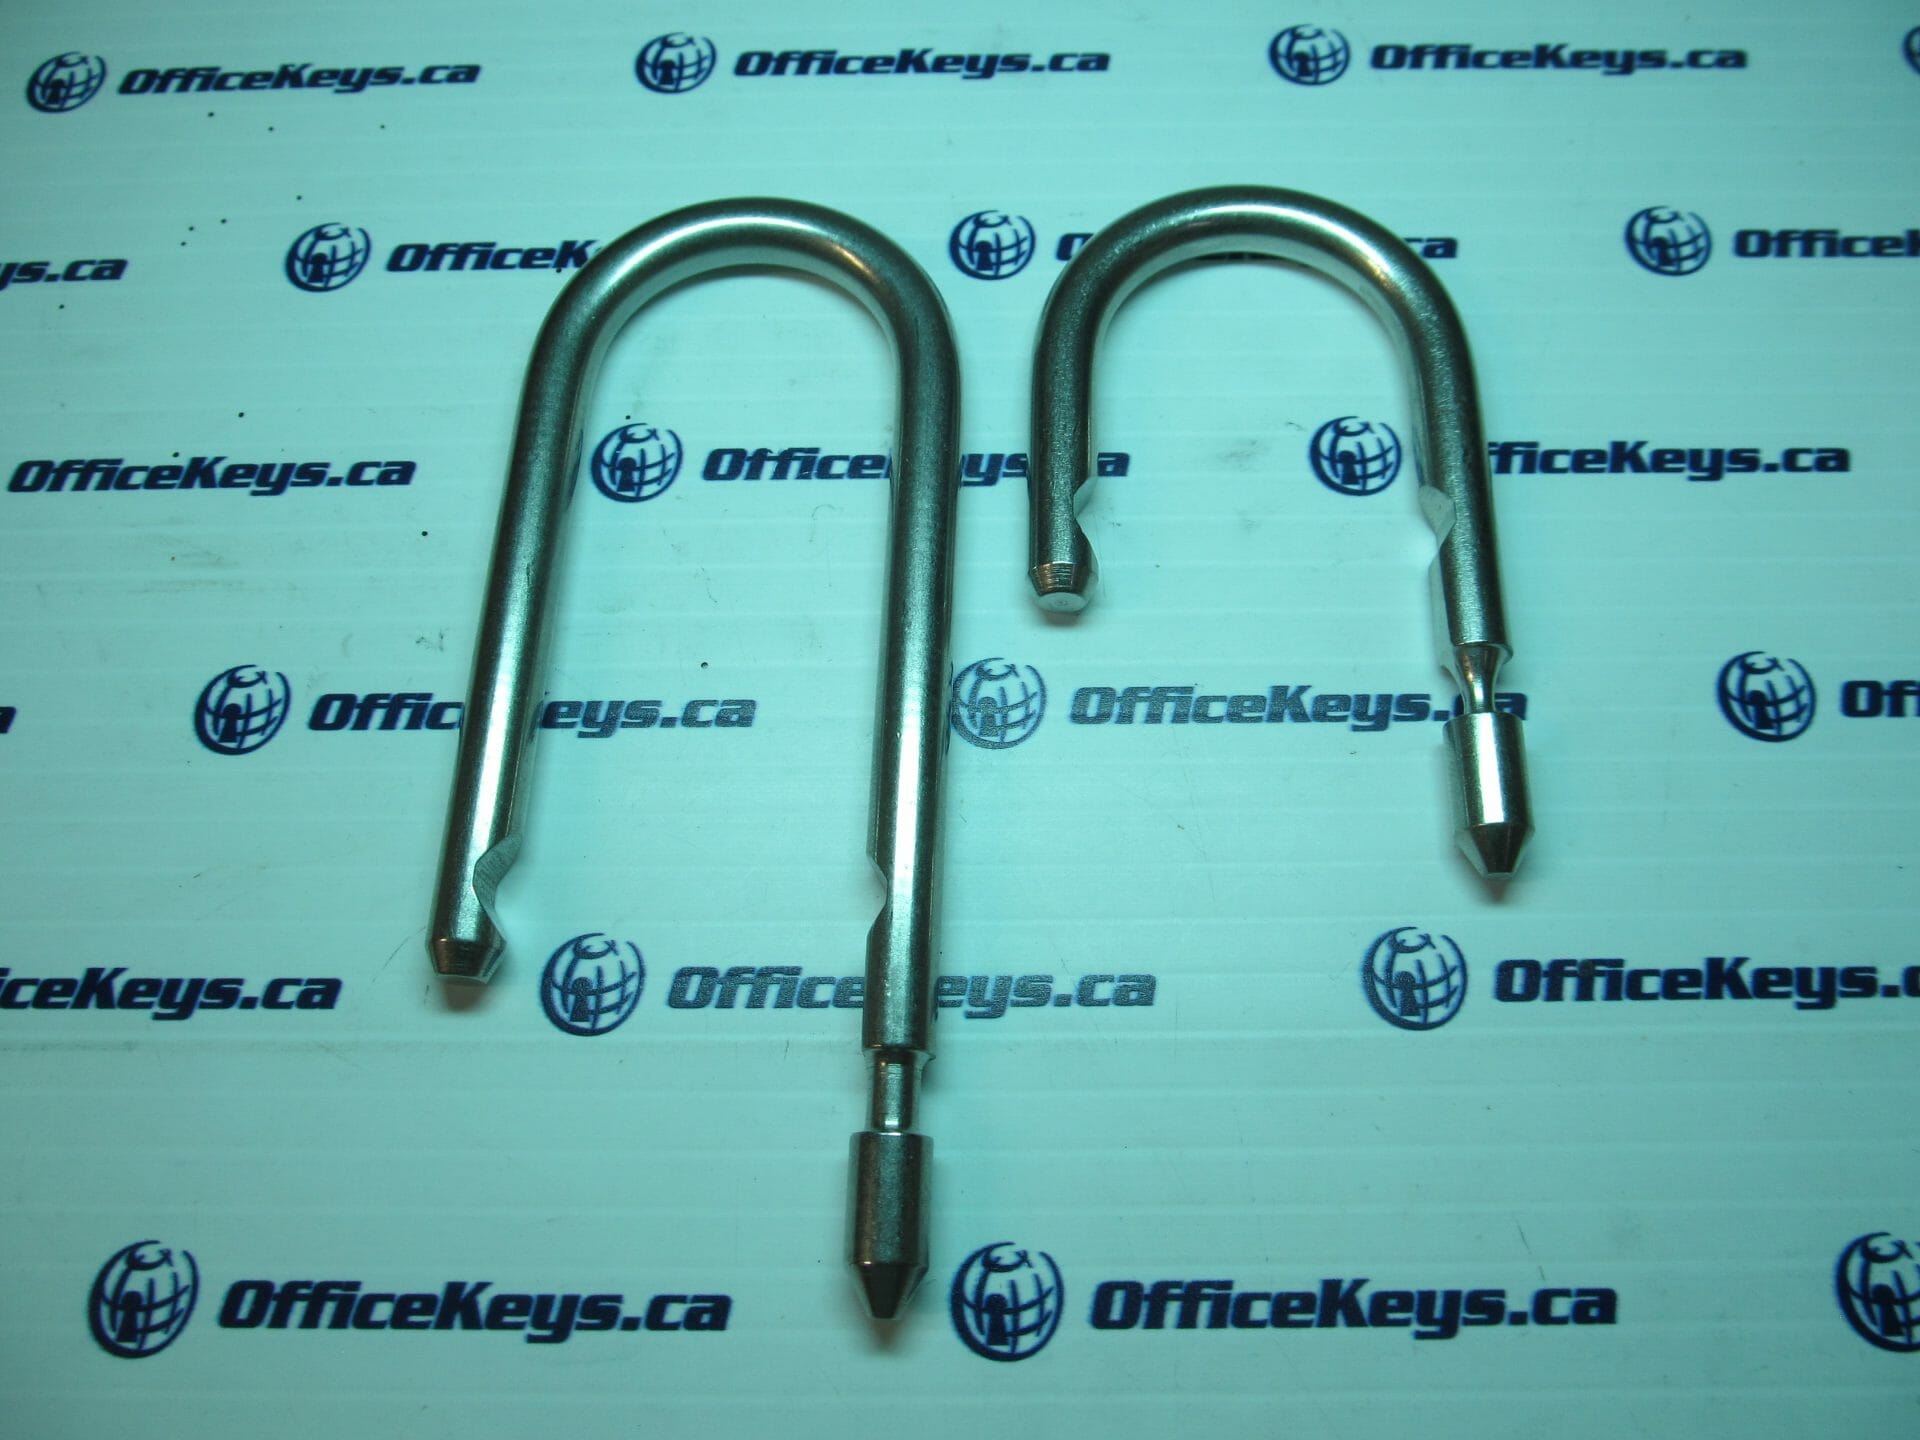 Capitol Lock 4096-14 Canadian Mailbox Lock 